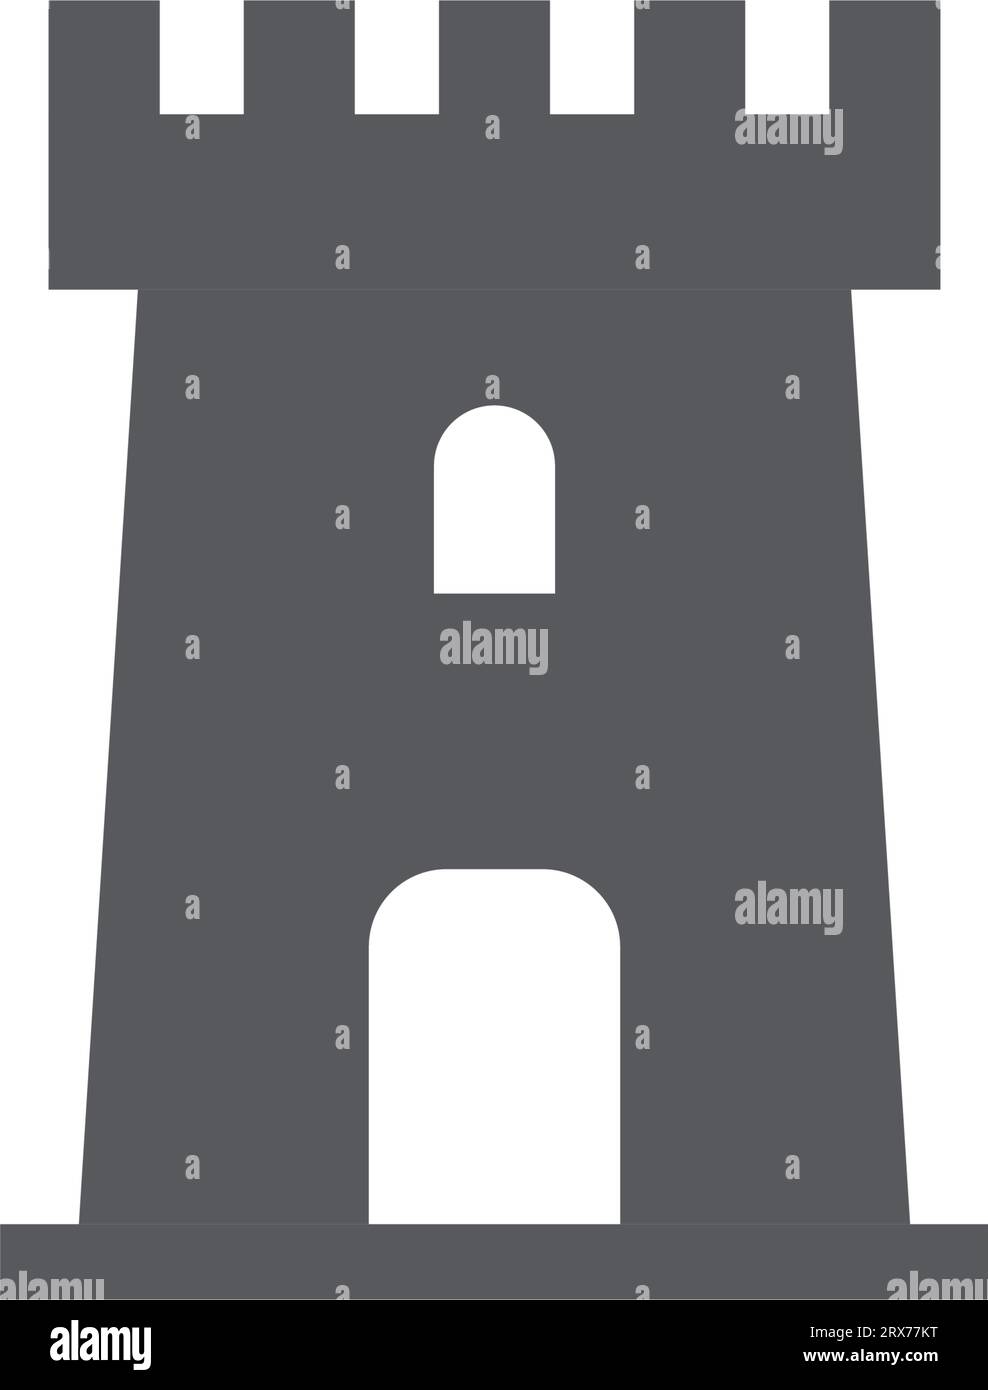 Icona della torre del castello in stile piatto. Illustrazione vettoriale della cittadella medievale su sfondo isolato. Concetto di business dell'insegna dell'edificio fortezza. Illustrazione Vettoriale